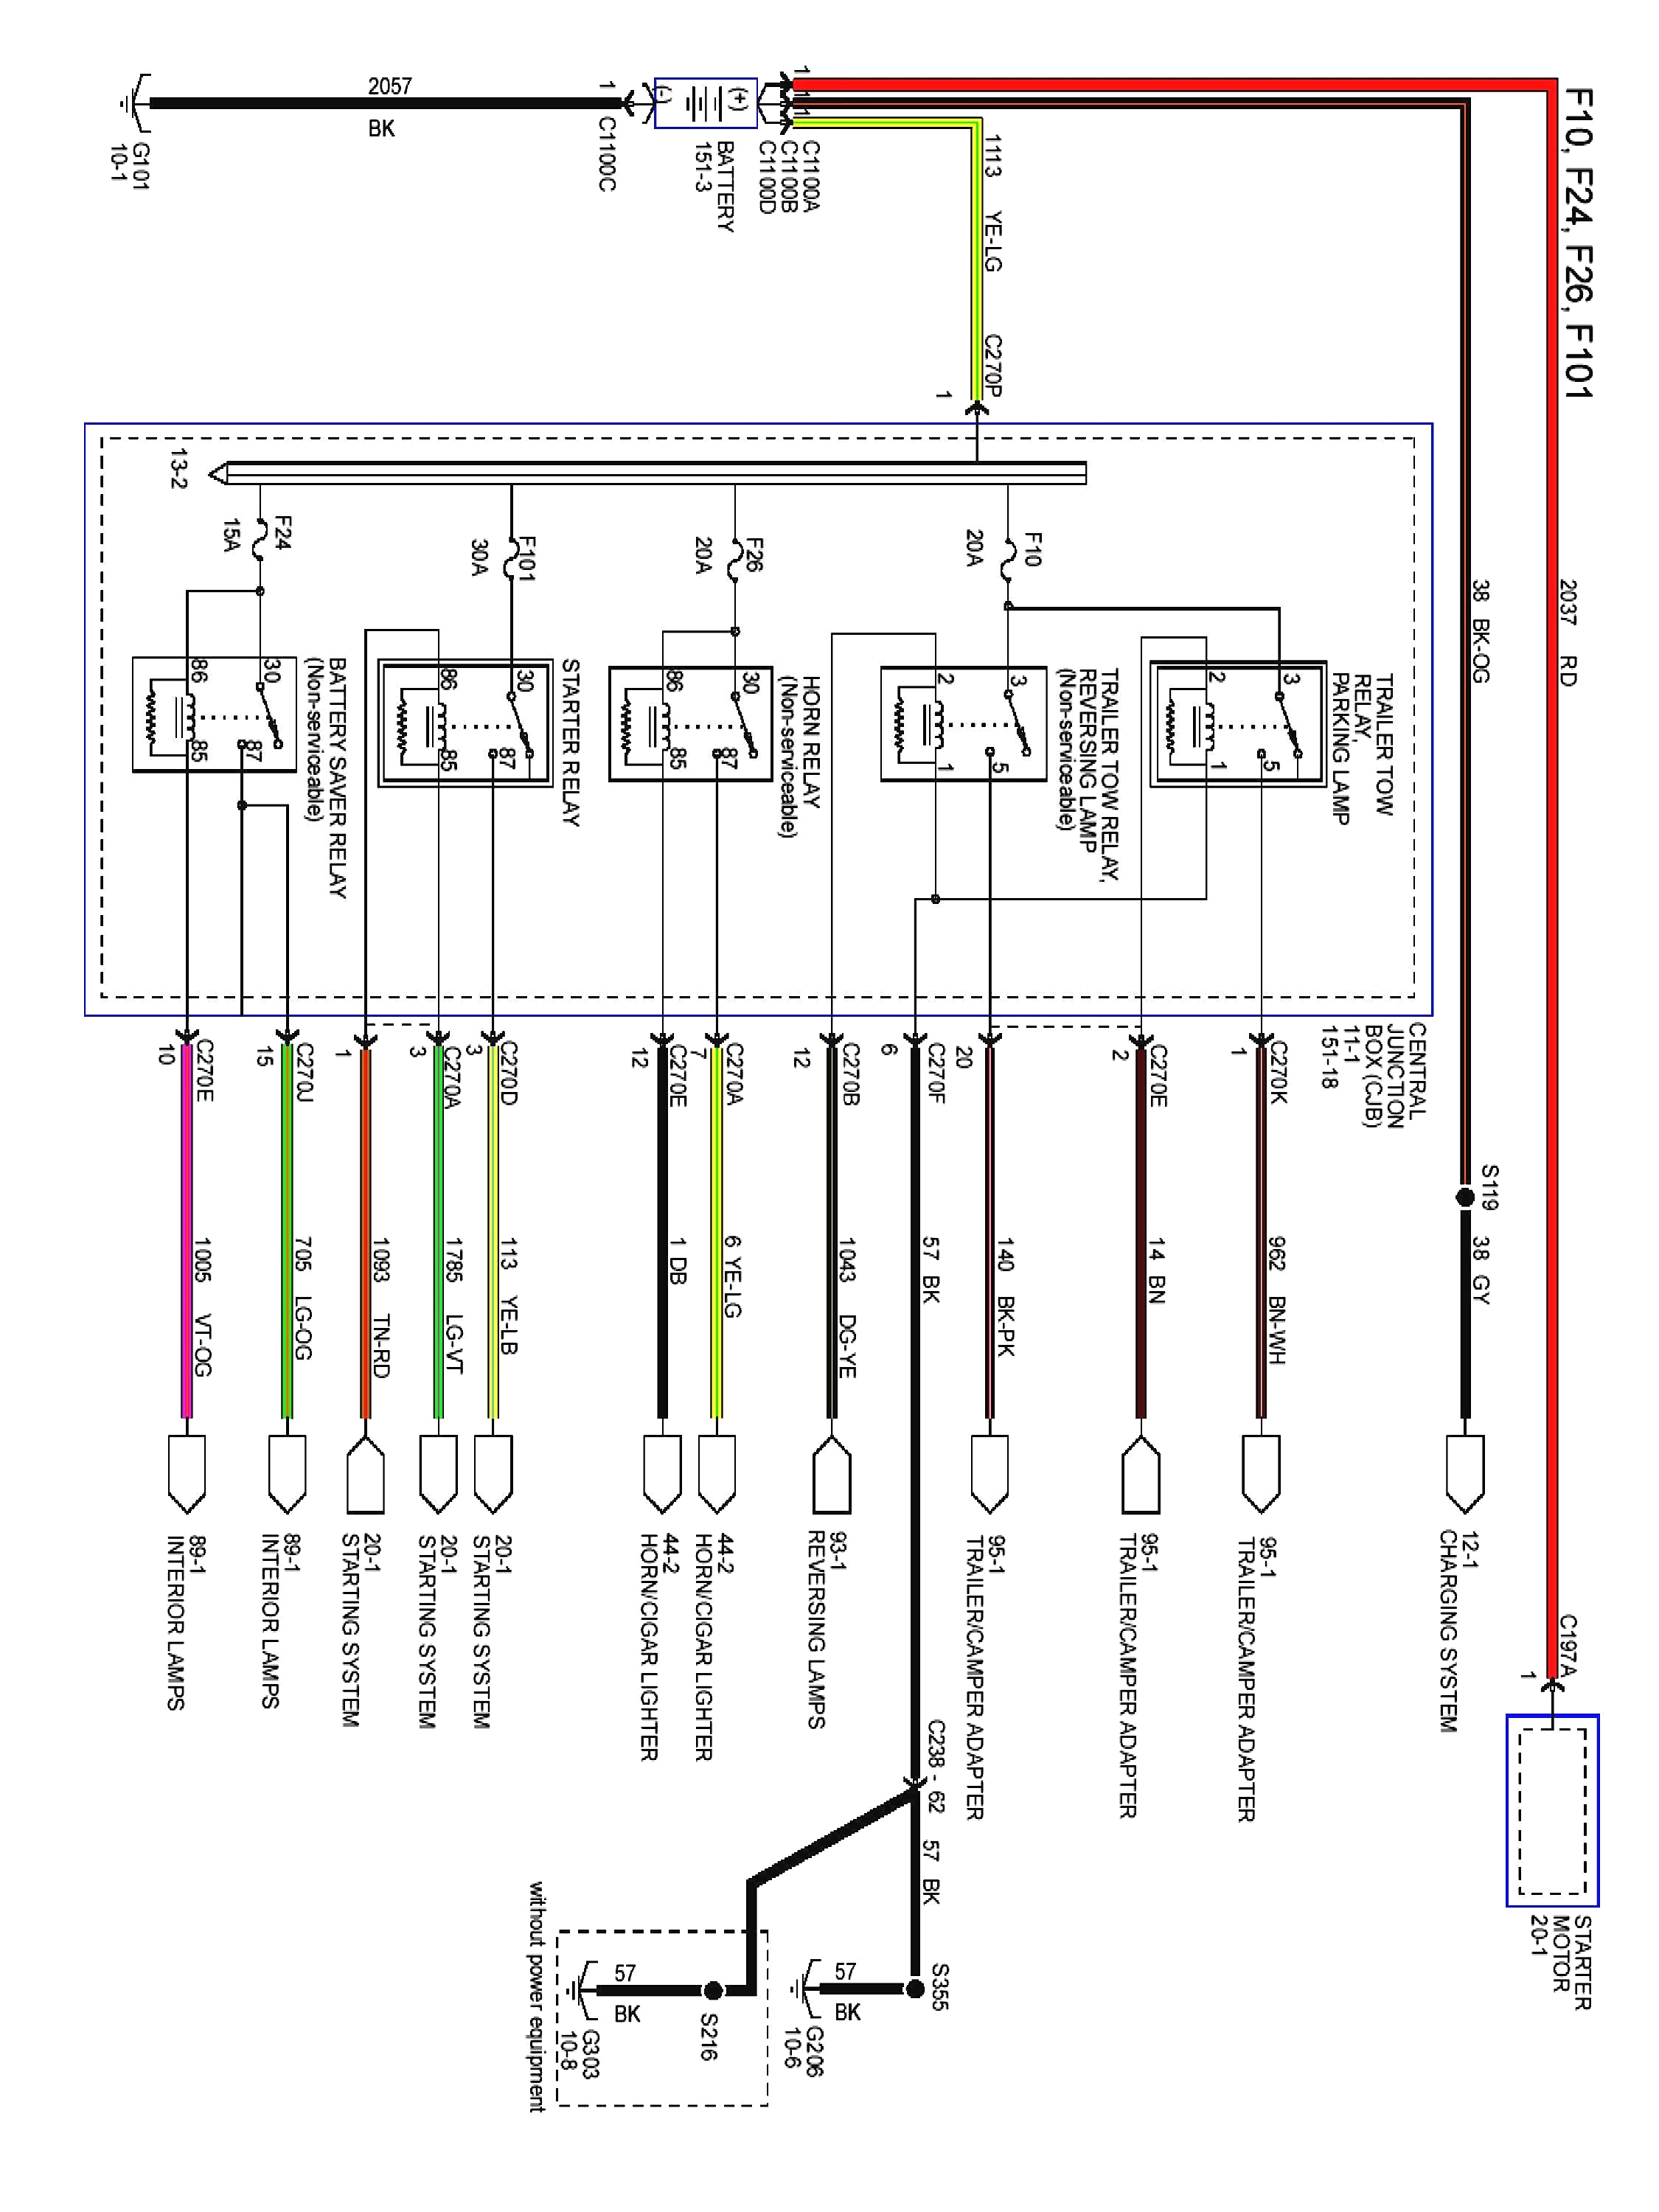 ml wiring diagram schema diagram database ml radio wiring diagram wiring diagram aiphone model c ml